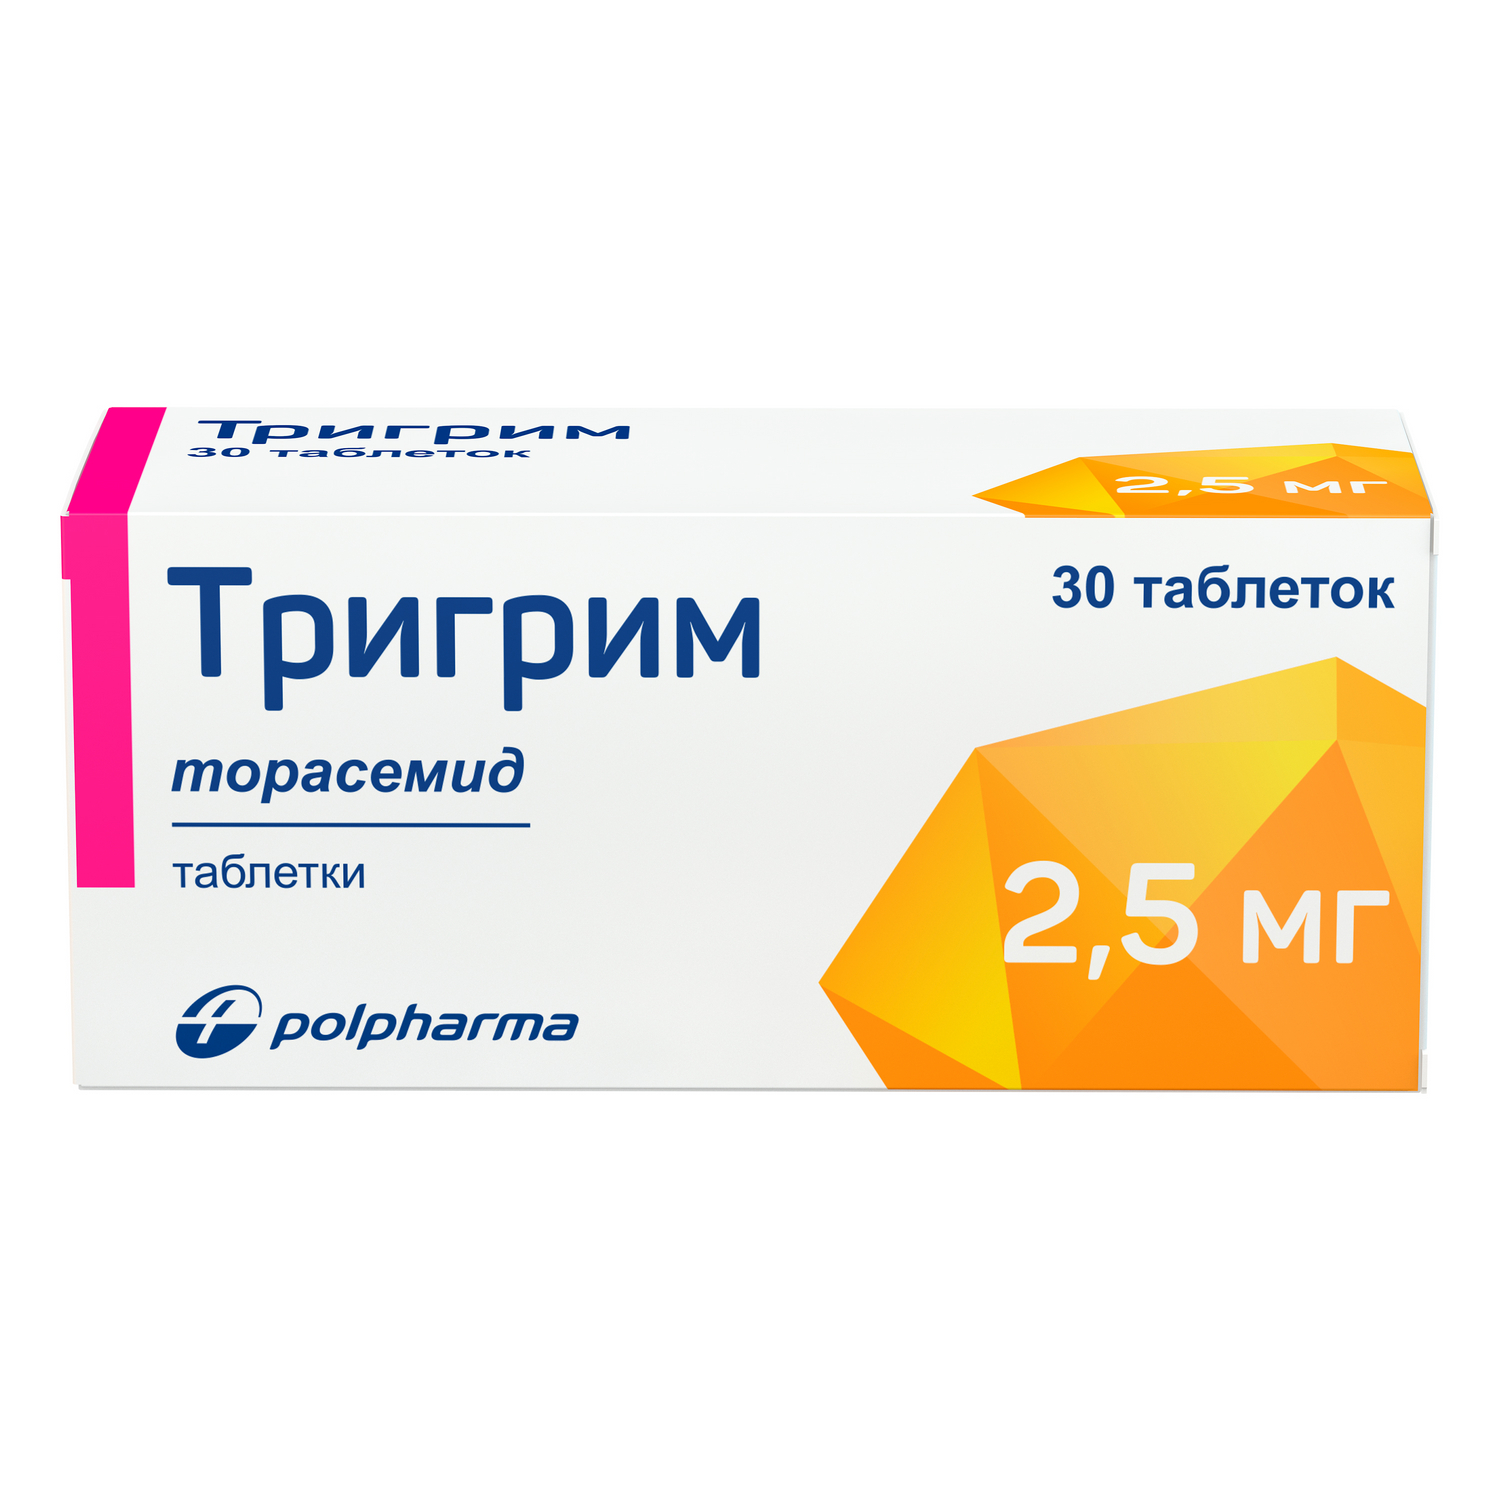 Тригрим тб   2,5 мг № 30 (Акрихин/Польфарма)